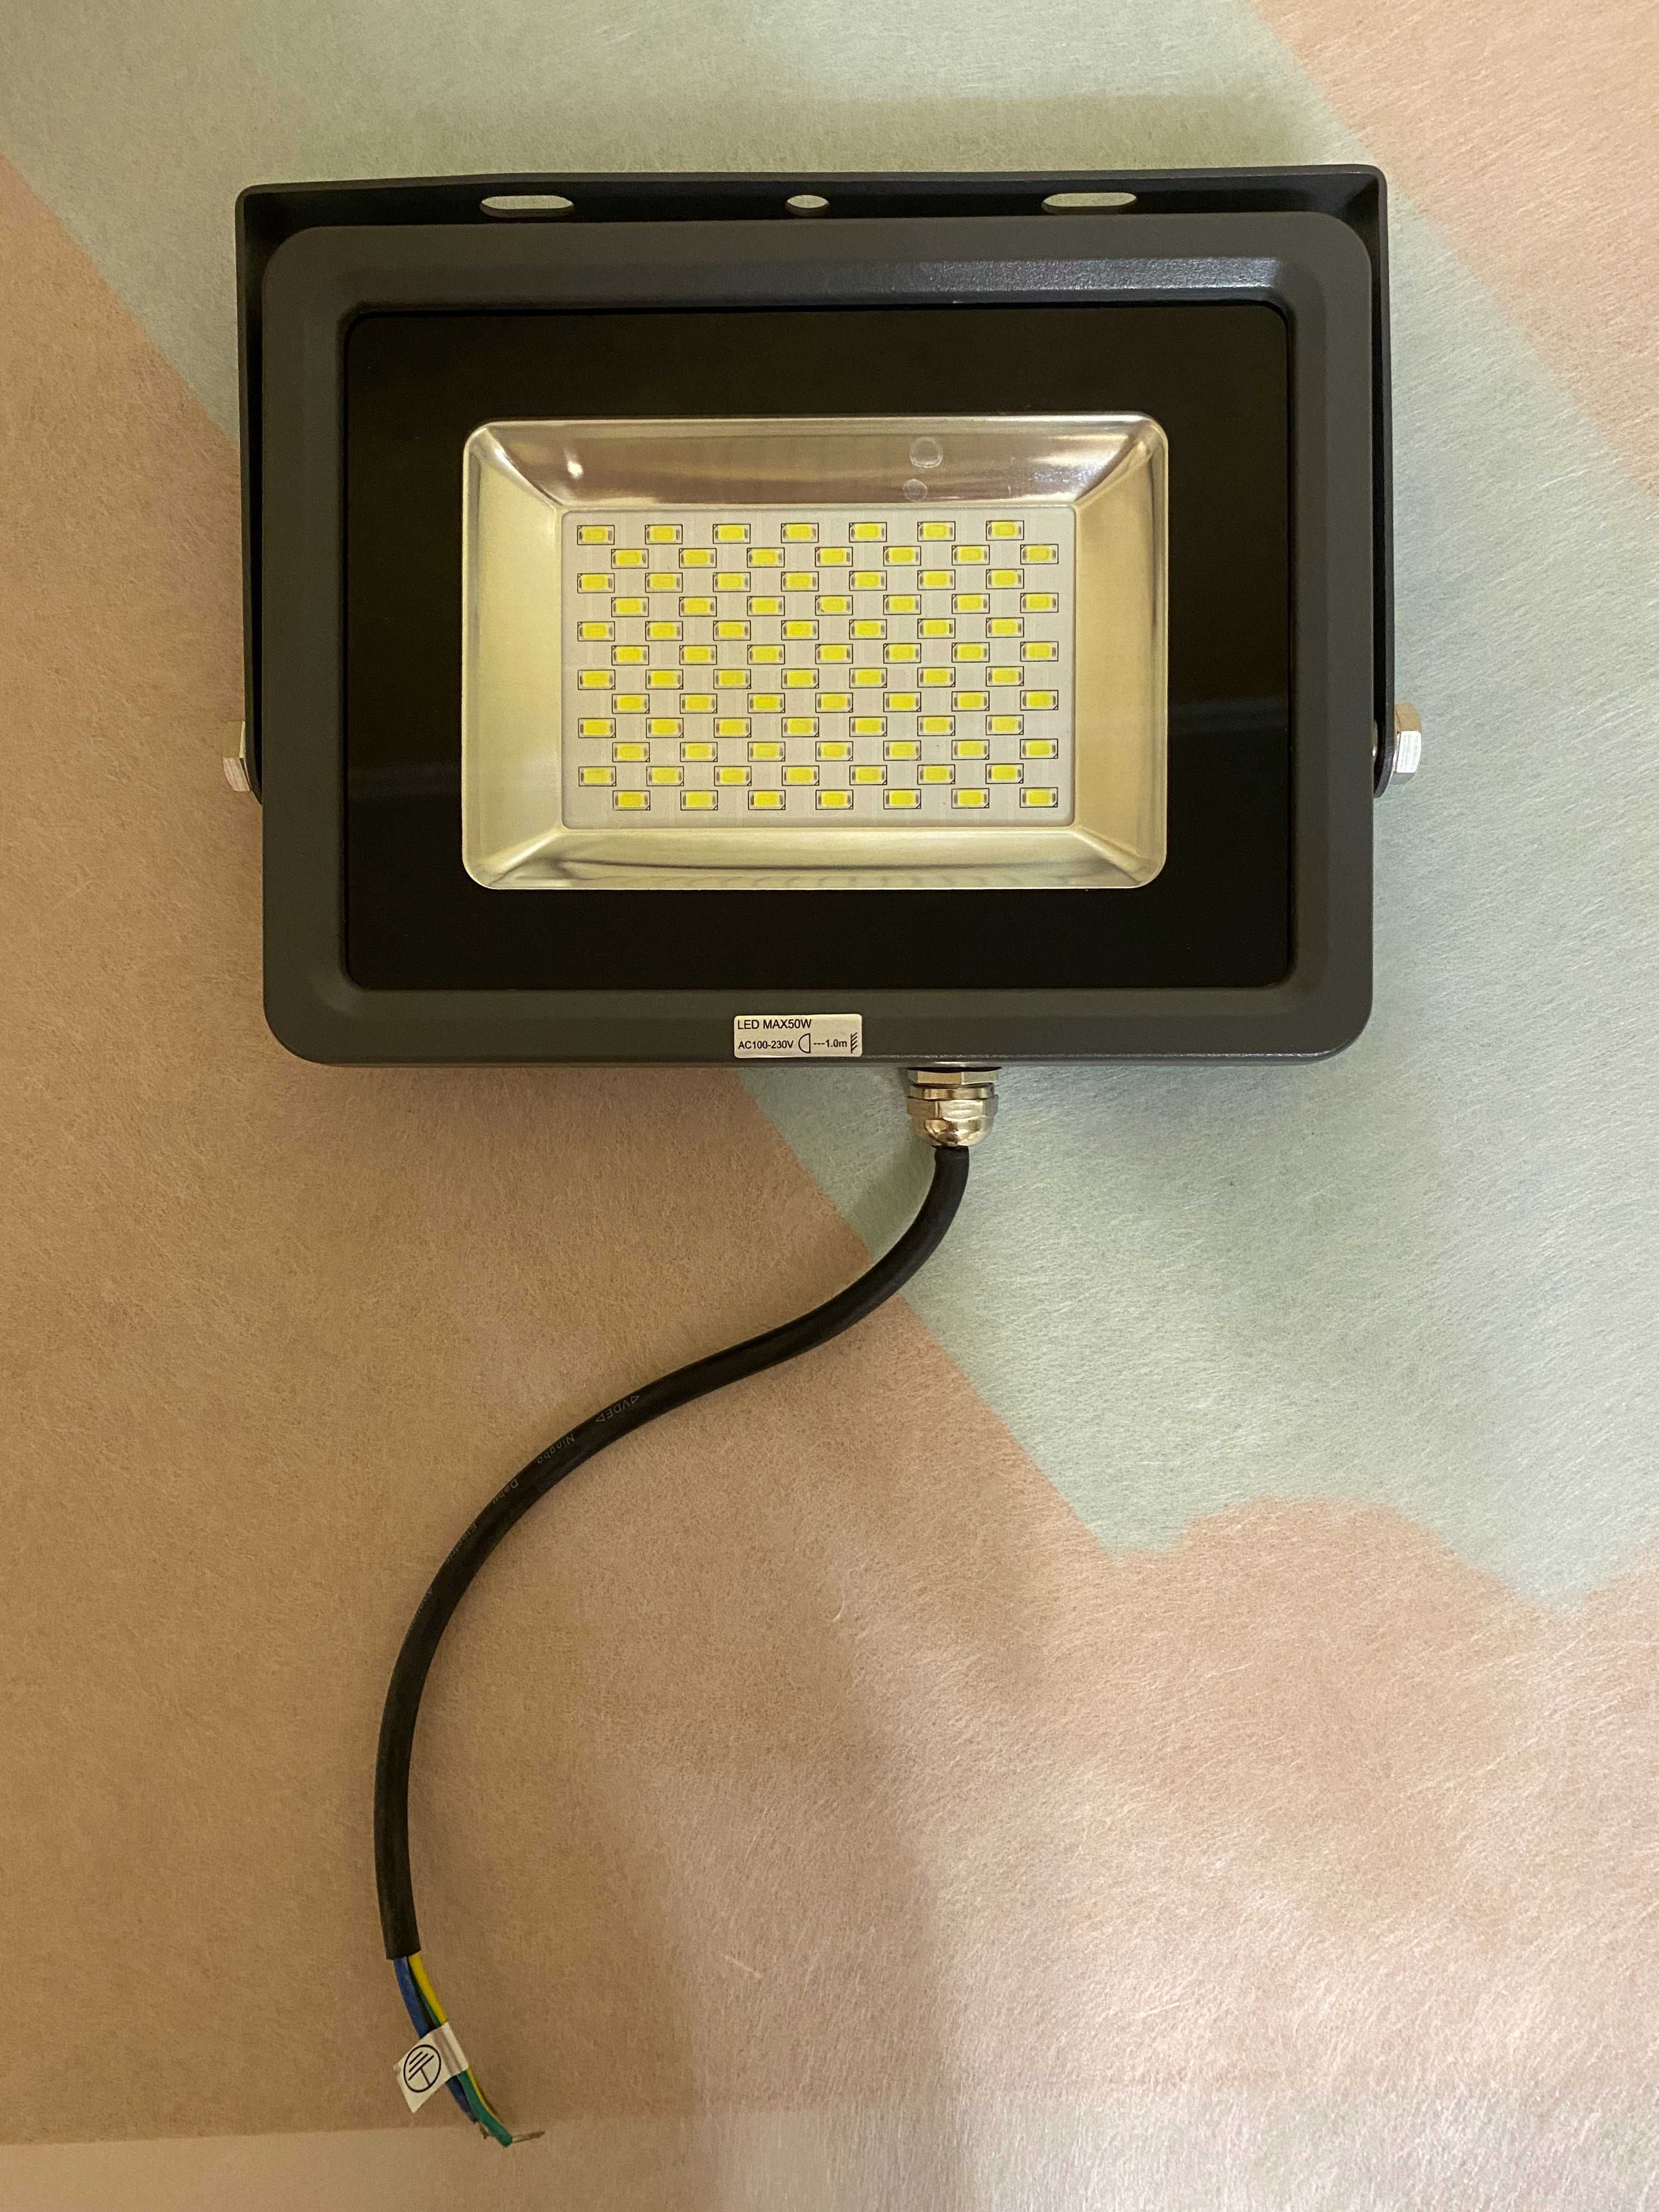 Прожектор світлодіодний LED GLOBO 34214 50w IP65